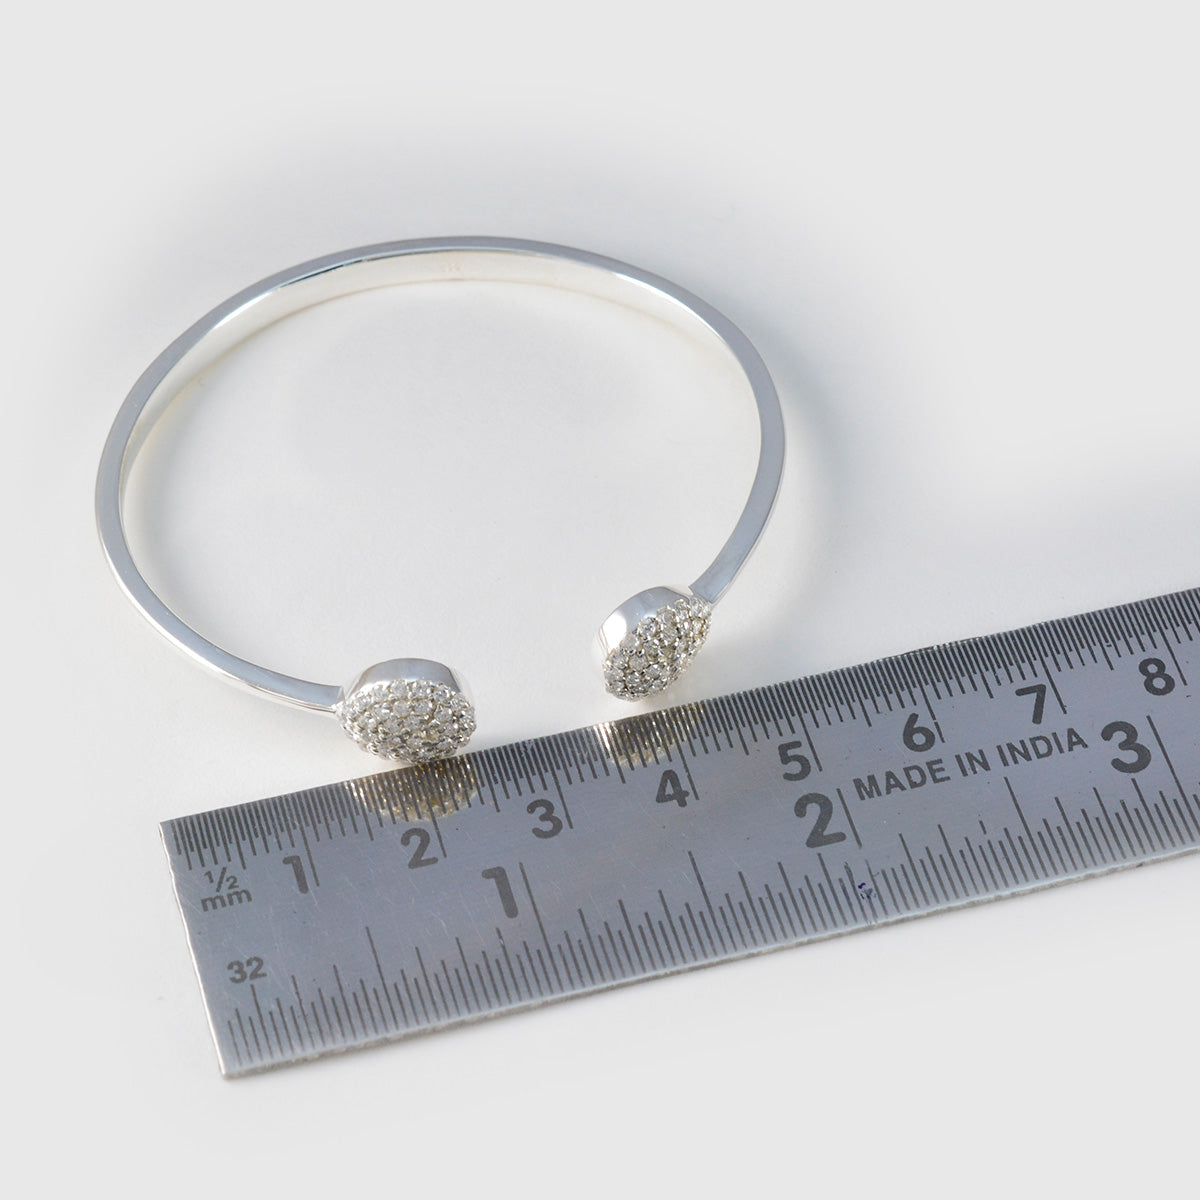 riyo miglior braccialetto in argento sterling 925 per ragazze braccialetto bianco con cz braccialetto con castone braccialetto rigido misura l 6-8,5 pollici.